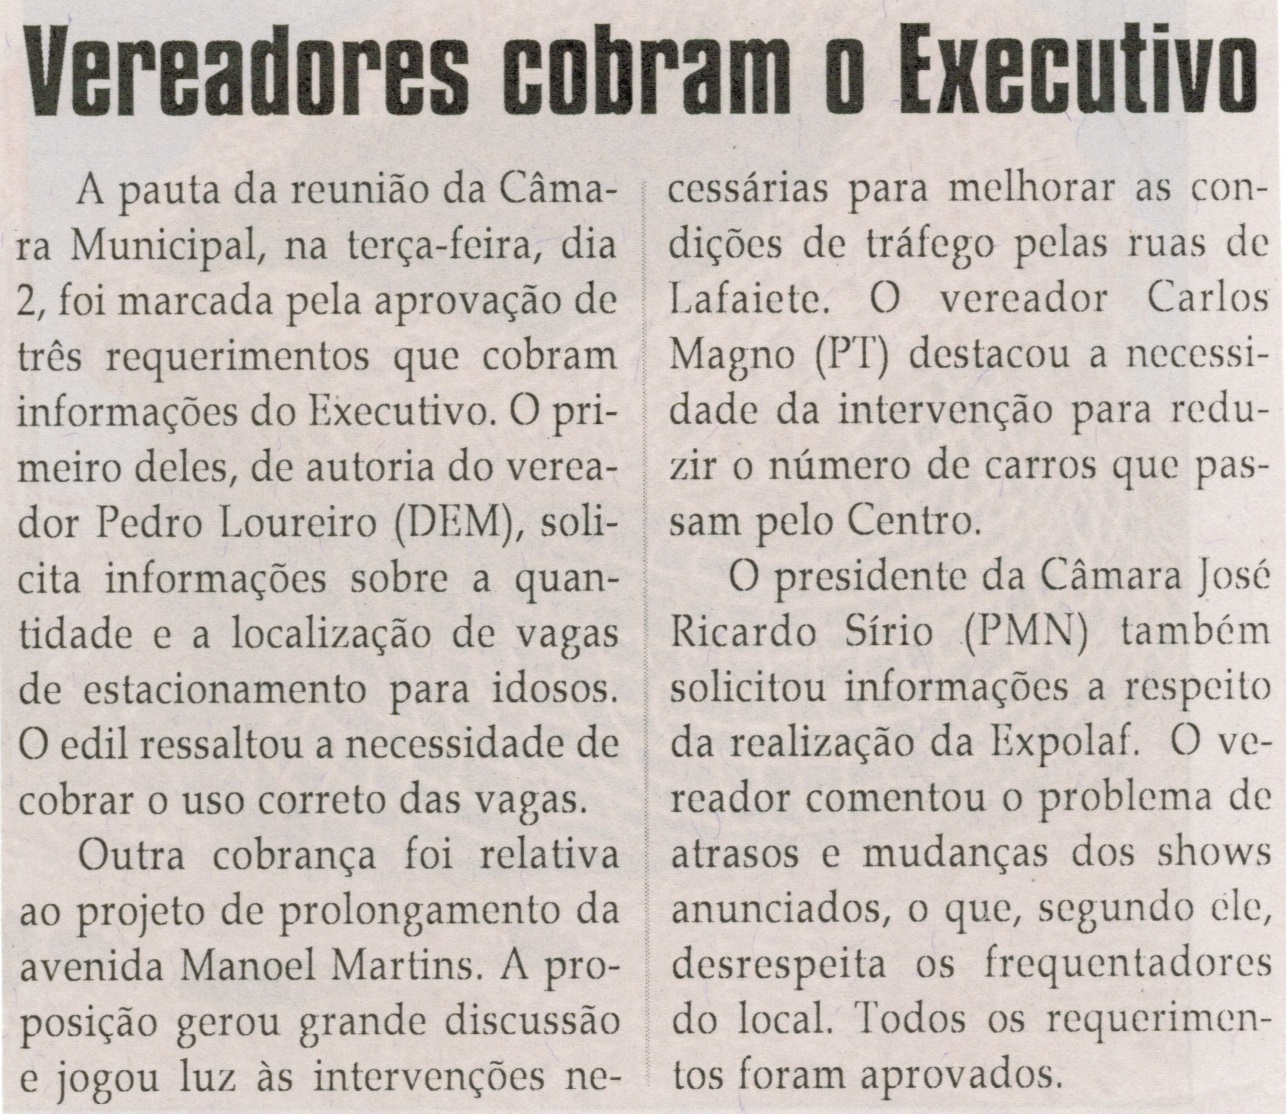 Vereadores cobram o Executivo. Jornal Correio da Cidade, Conselheiro Lafaiete, 06 set. 2014, p. 4.